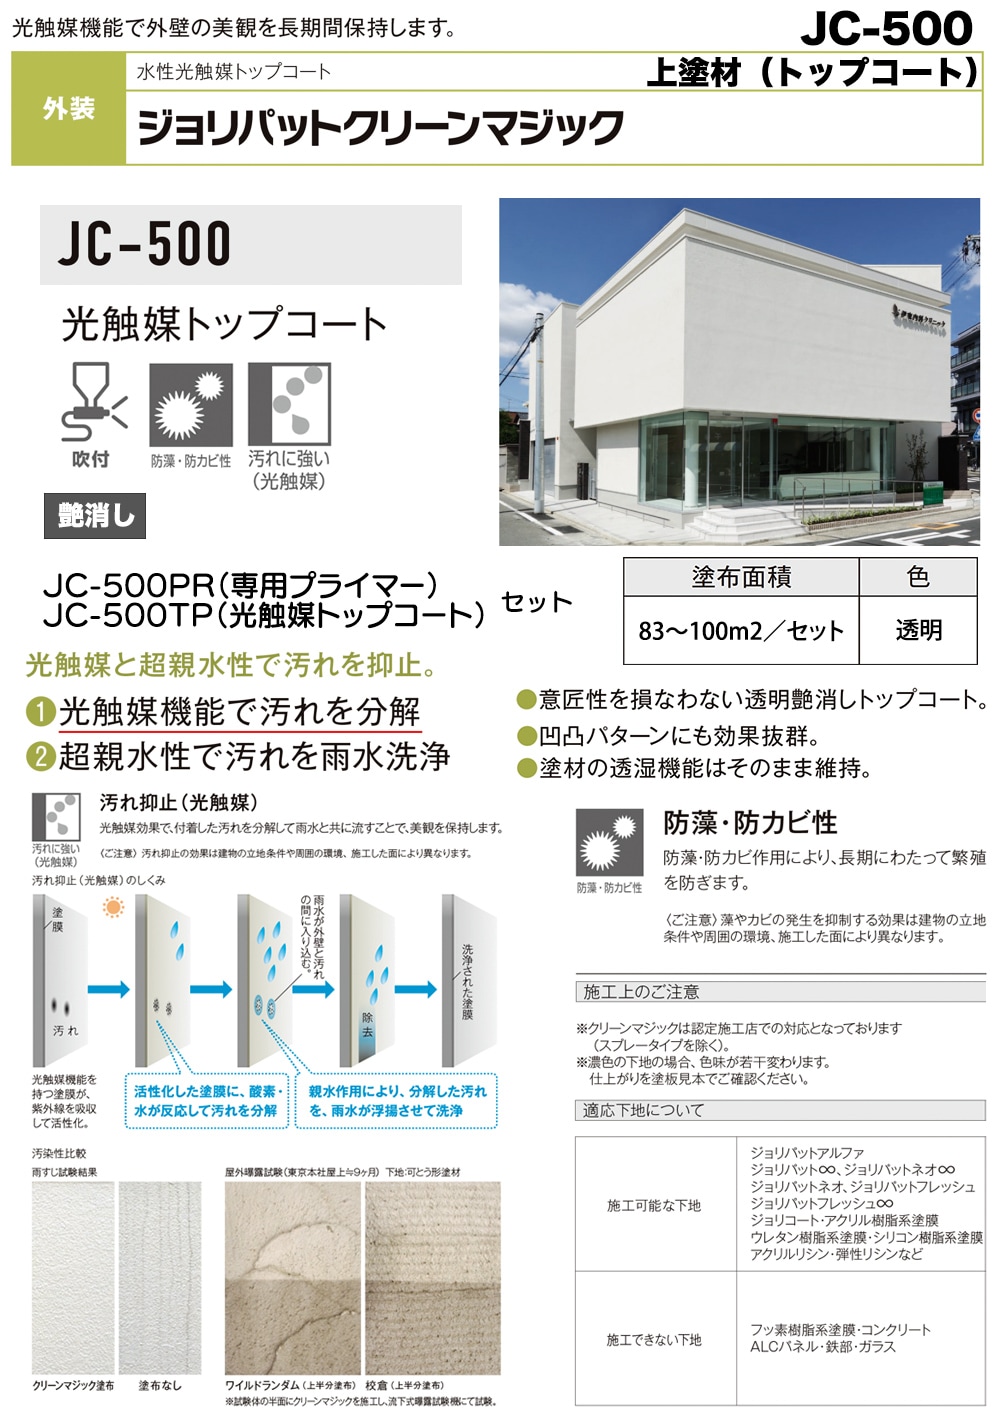 ジョリパットクリーンマジック JC-500 10kgセット 【メーカー直送便/代